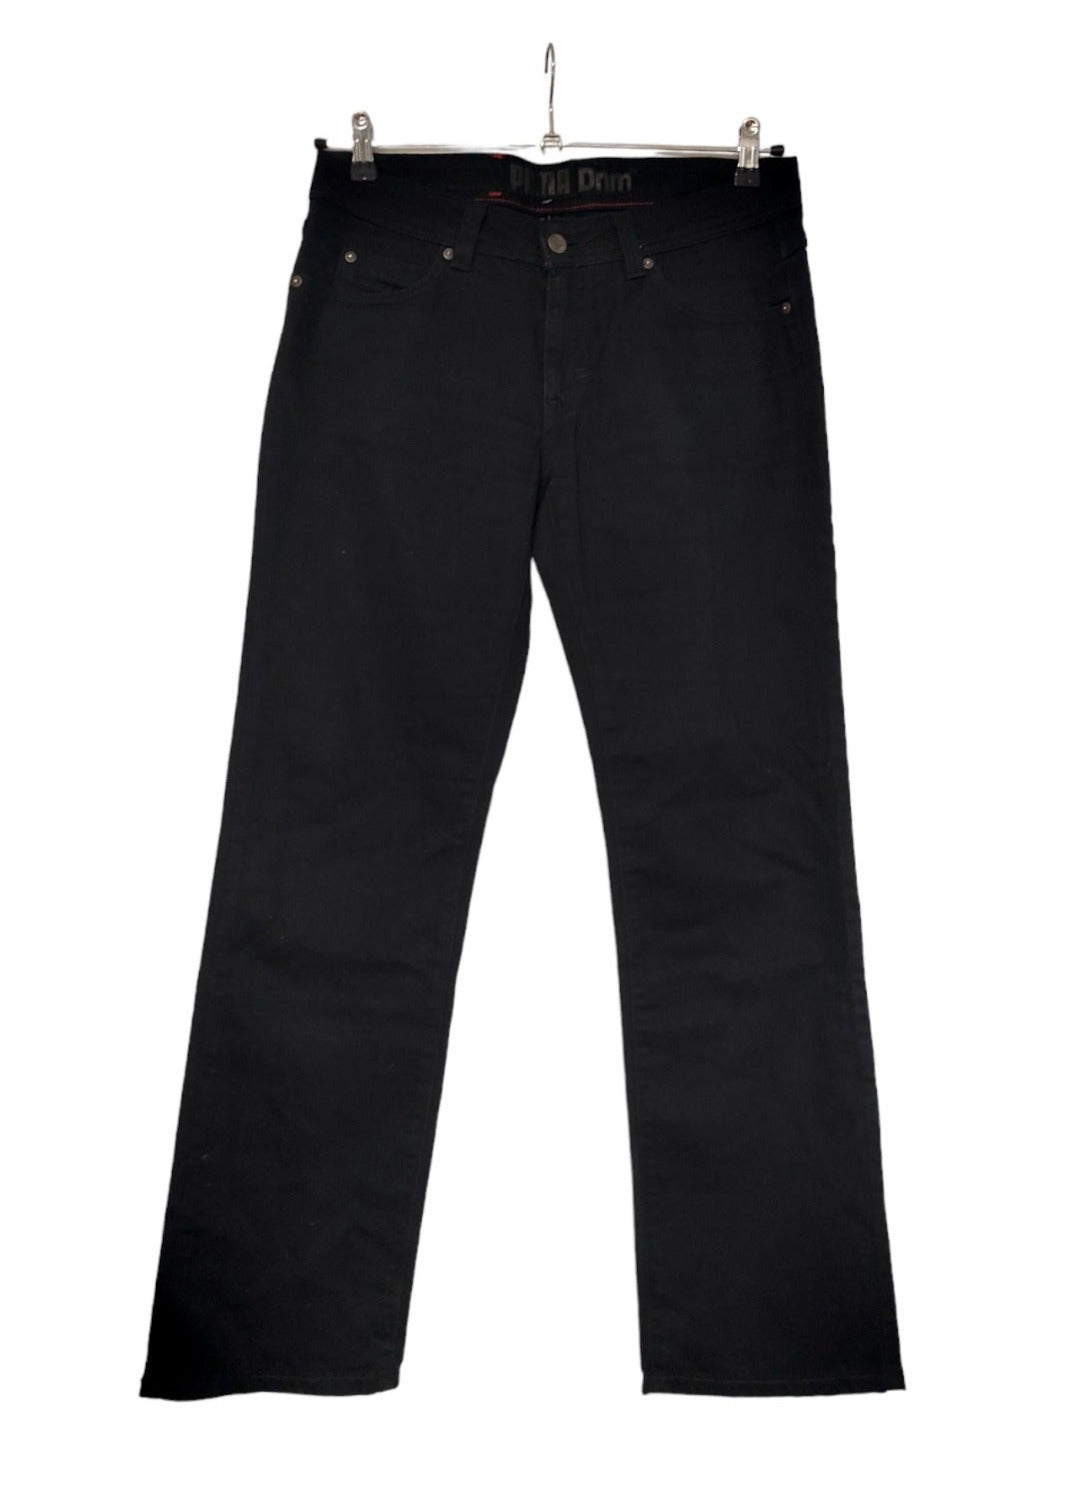 Γυναικείο Τζιν Παντελόνι PUMA σε Μαύρο χρώμα (Large - W31/L32)